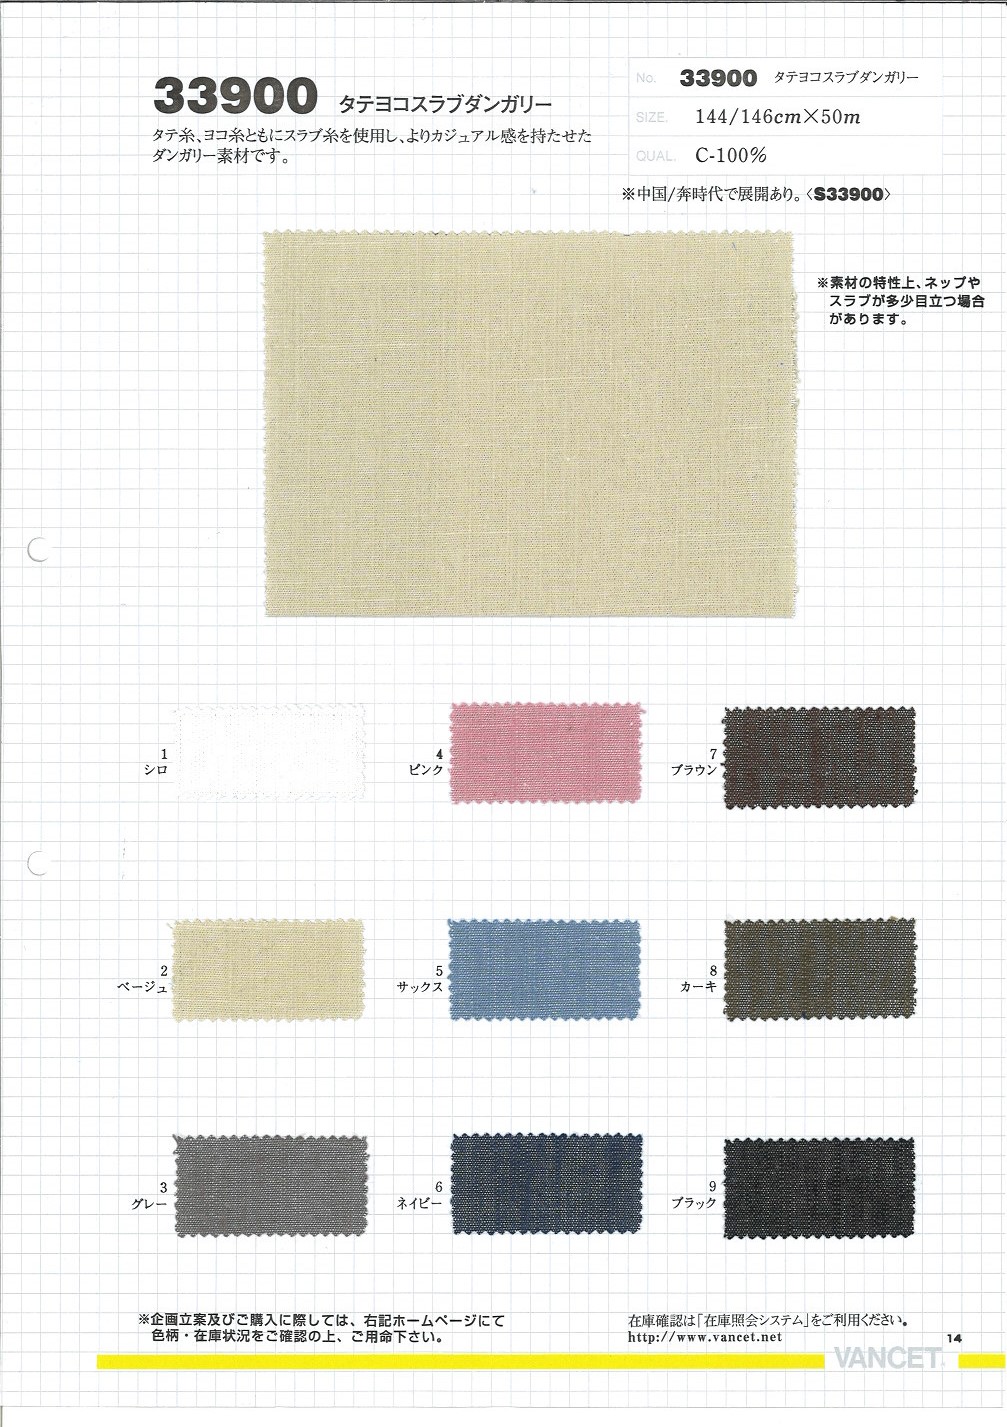 33900 Peto De Losa Vertical Y Horizontal[Fabrica Textil] VANCET